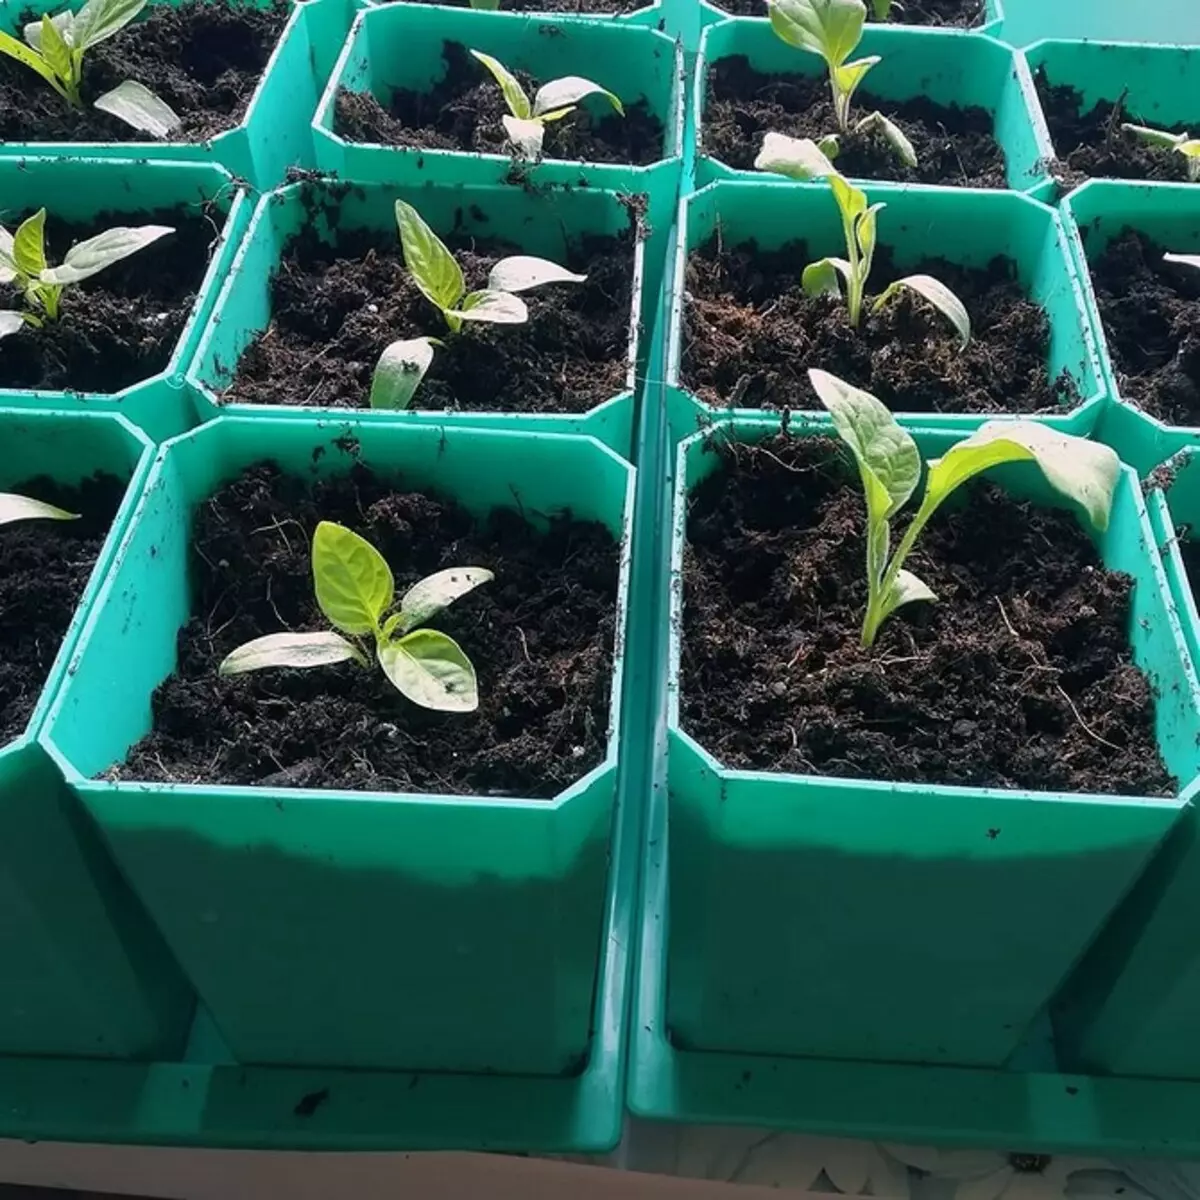 Seedlings ਲਈ 5 ਪ੍ਰਭਾਵਸ਼ਾਲੀ ਮਿੱਟੀ ਦੇ ਰੋਗਾਣੂ-ਰਹਿਤ .ੰਗ 20203_19